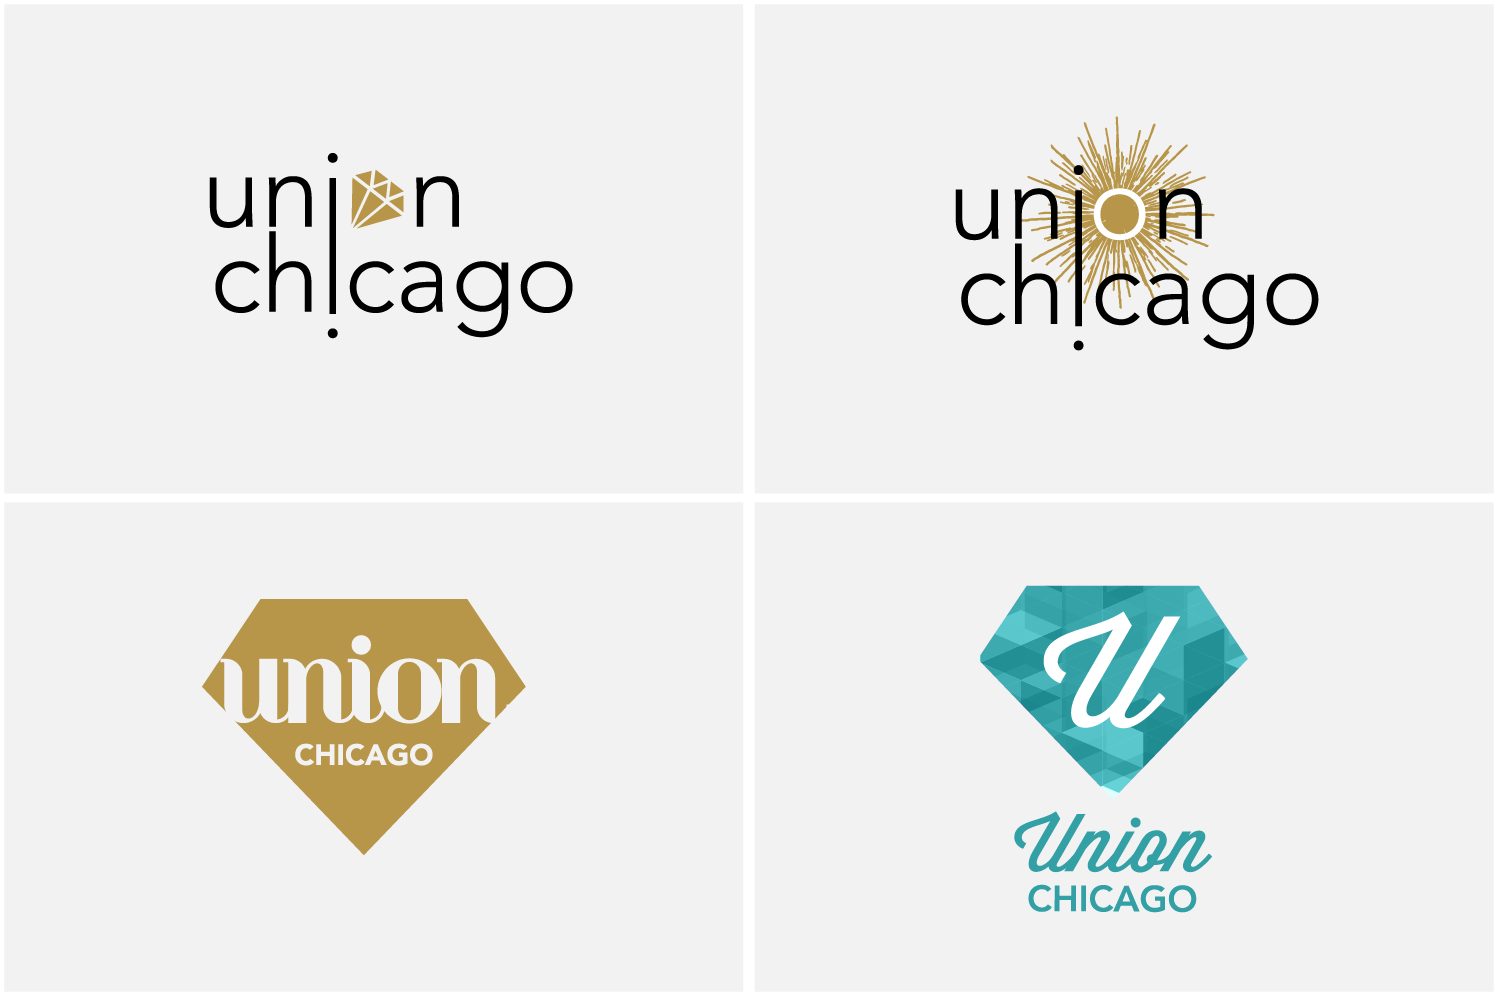 Union Chicago